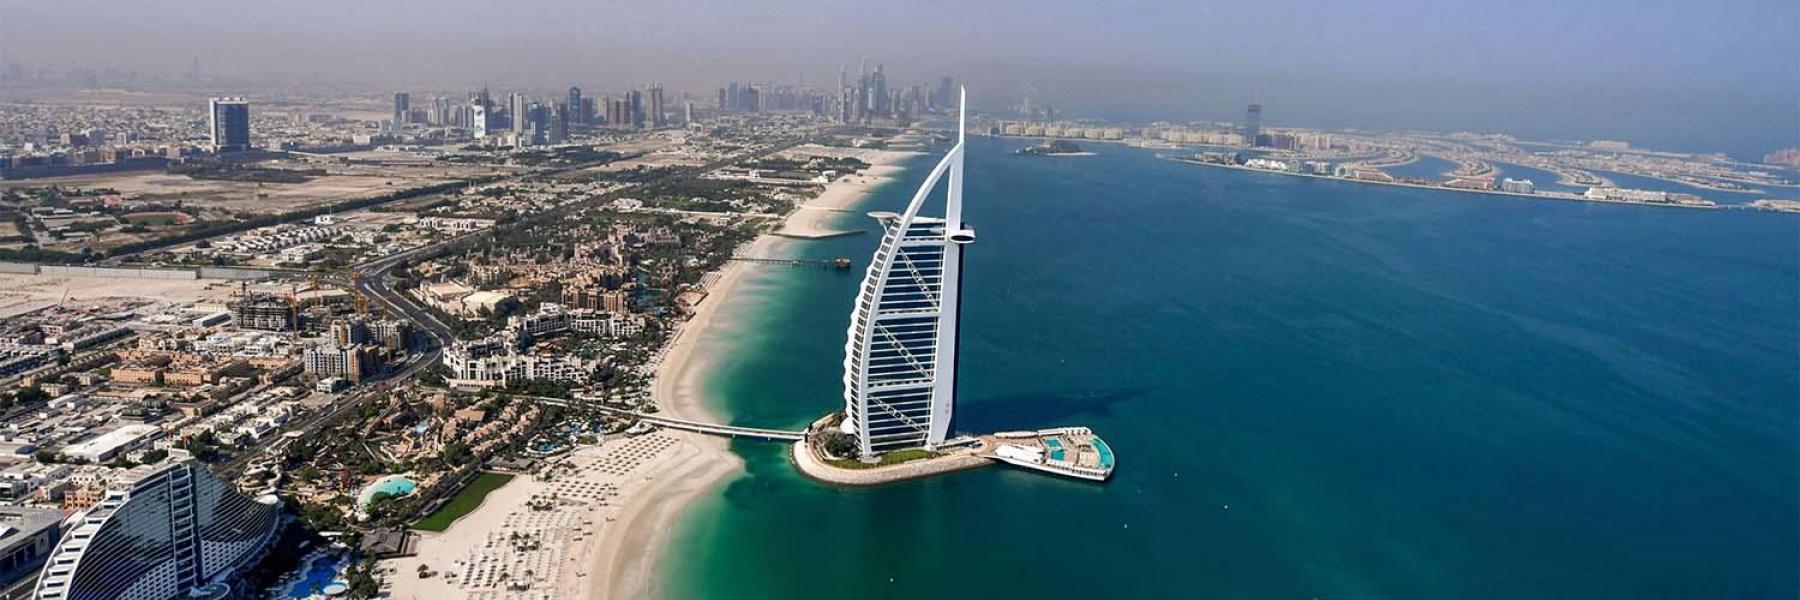 دليل المسافر إلى دبي في فصل الصيف